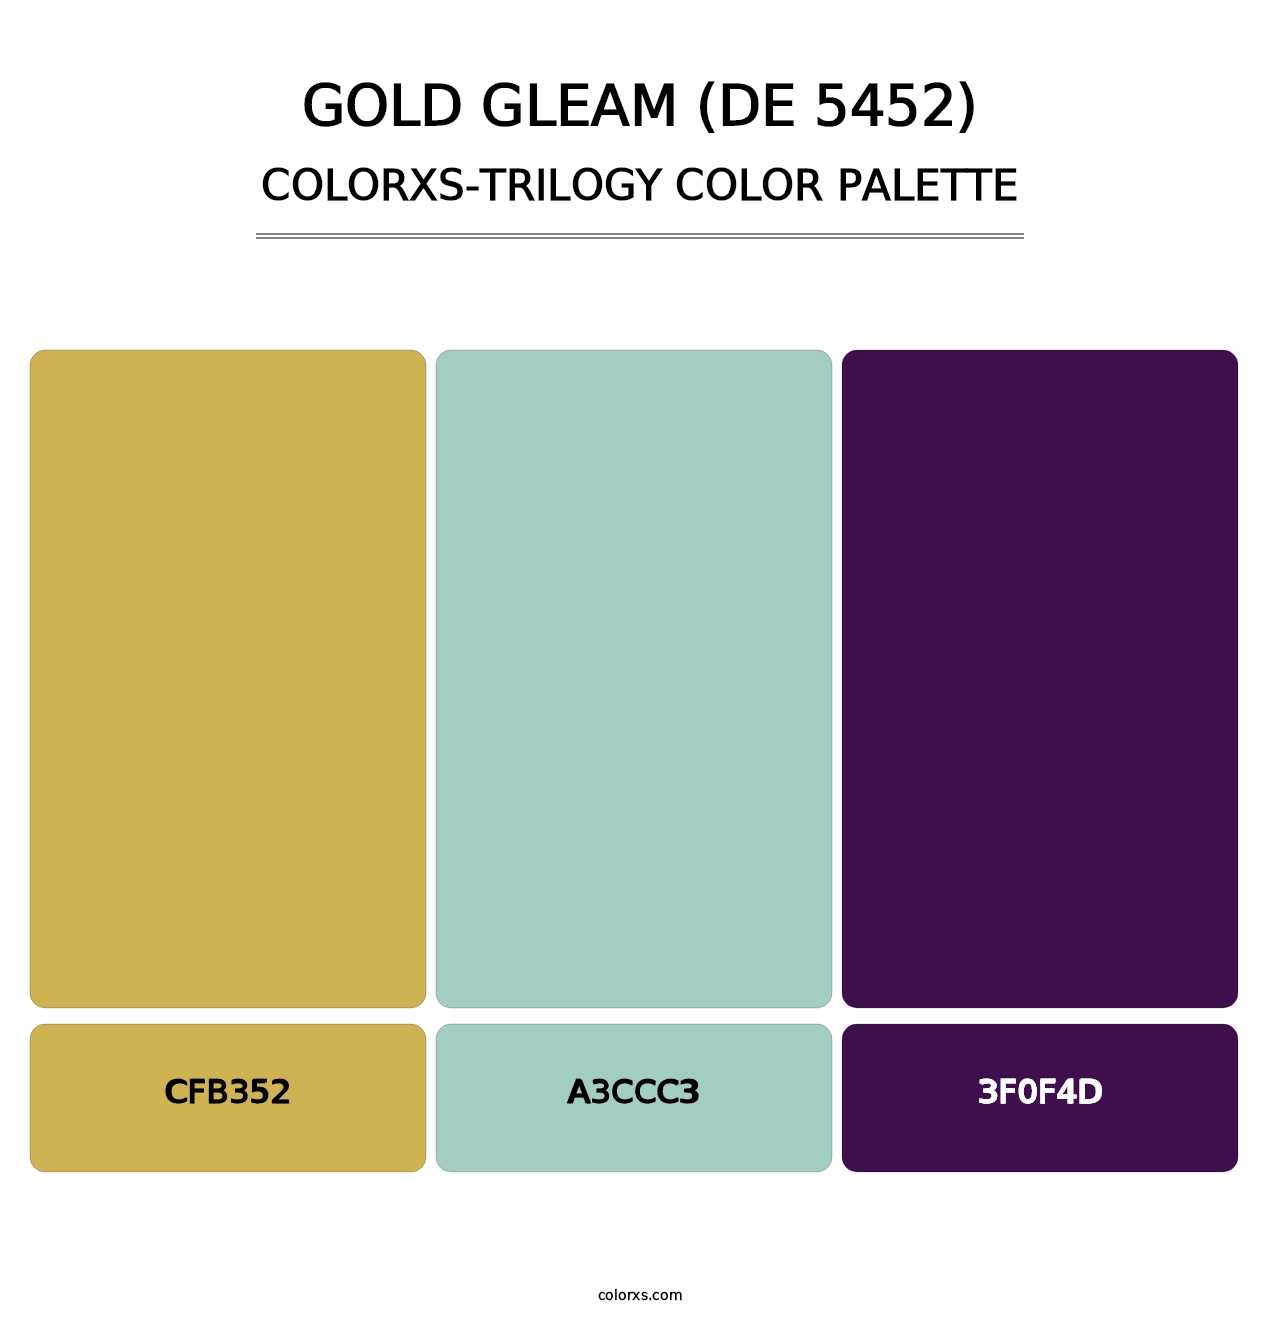 Gold Gleam (DE 5452) - Colorxs Trilogy Palette